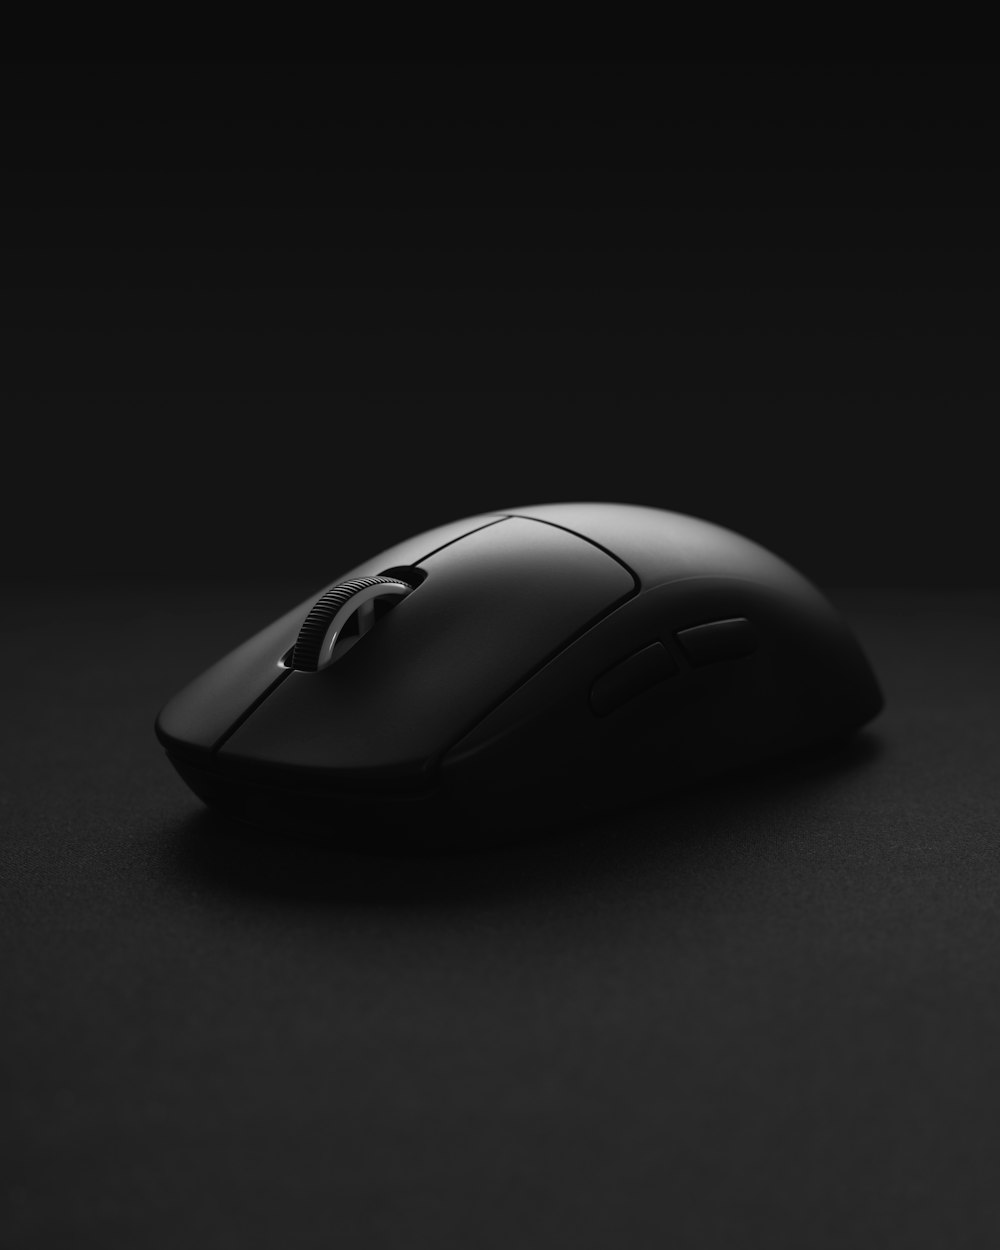 mouse de computador preto sem fio na superfície preta